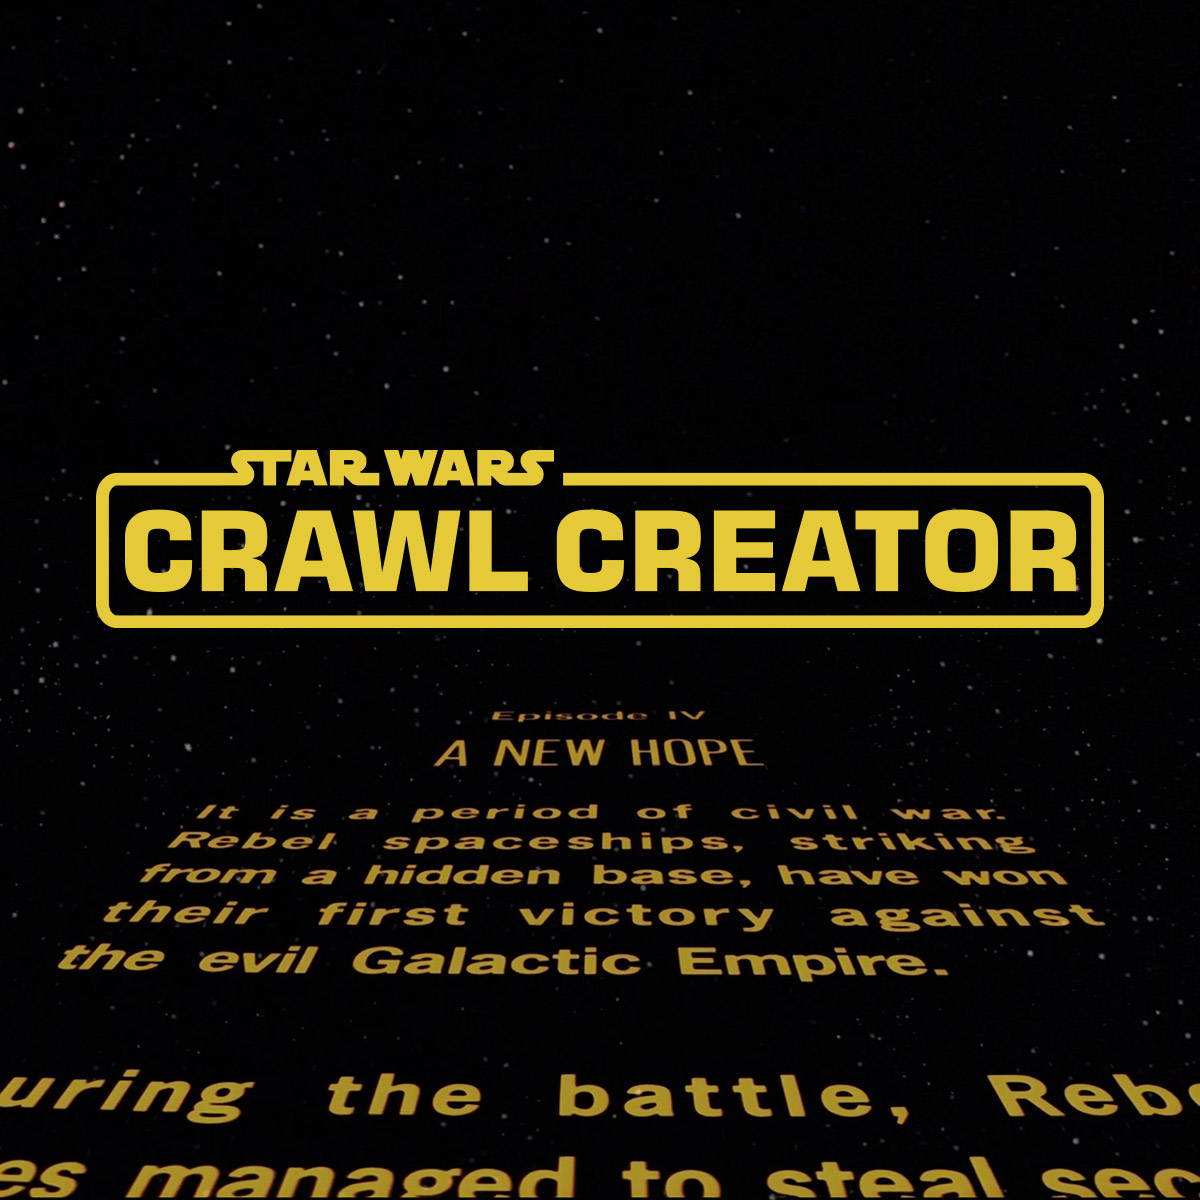 star wars font for windows movie maker